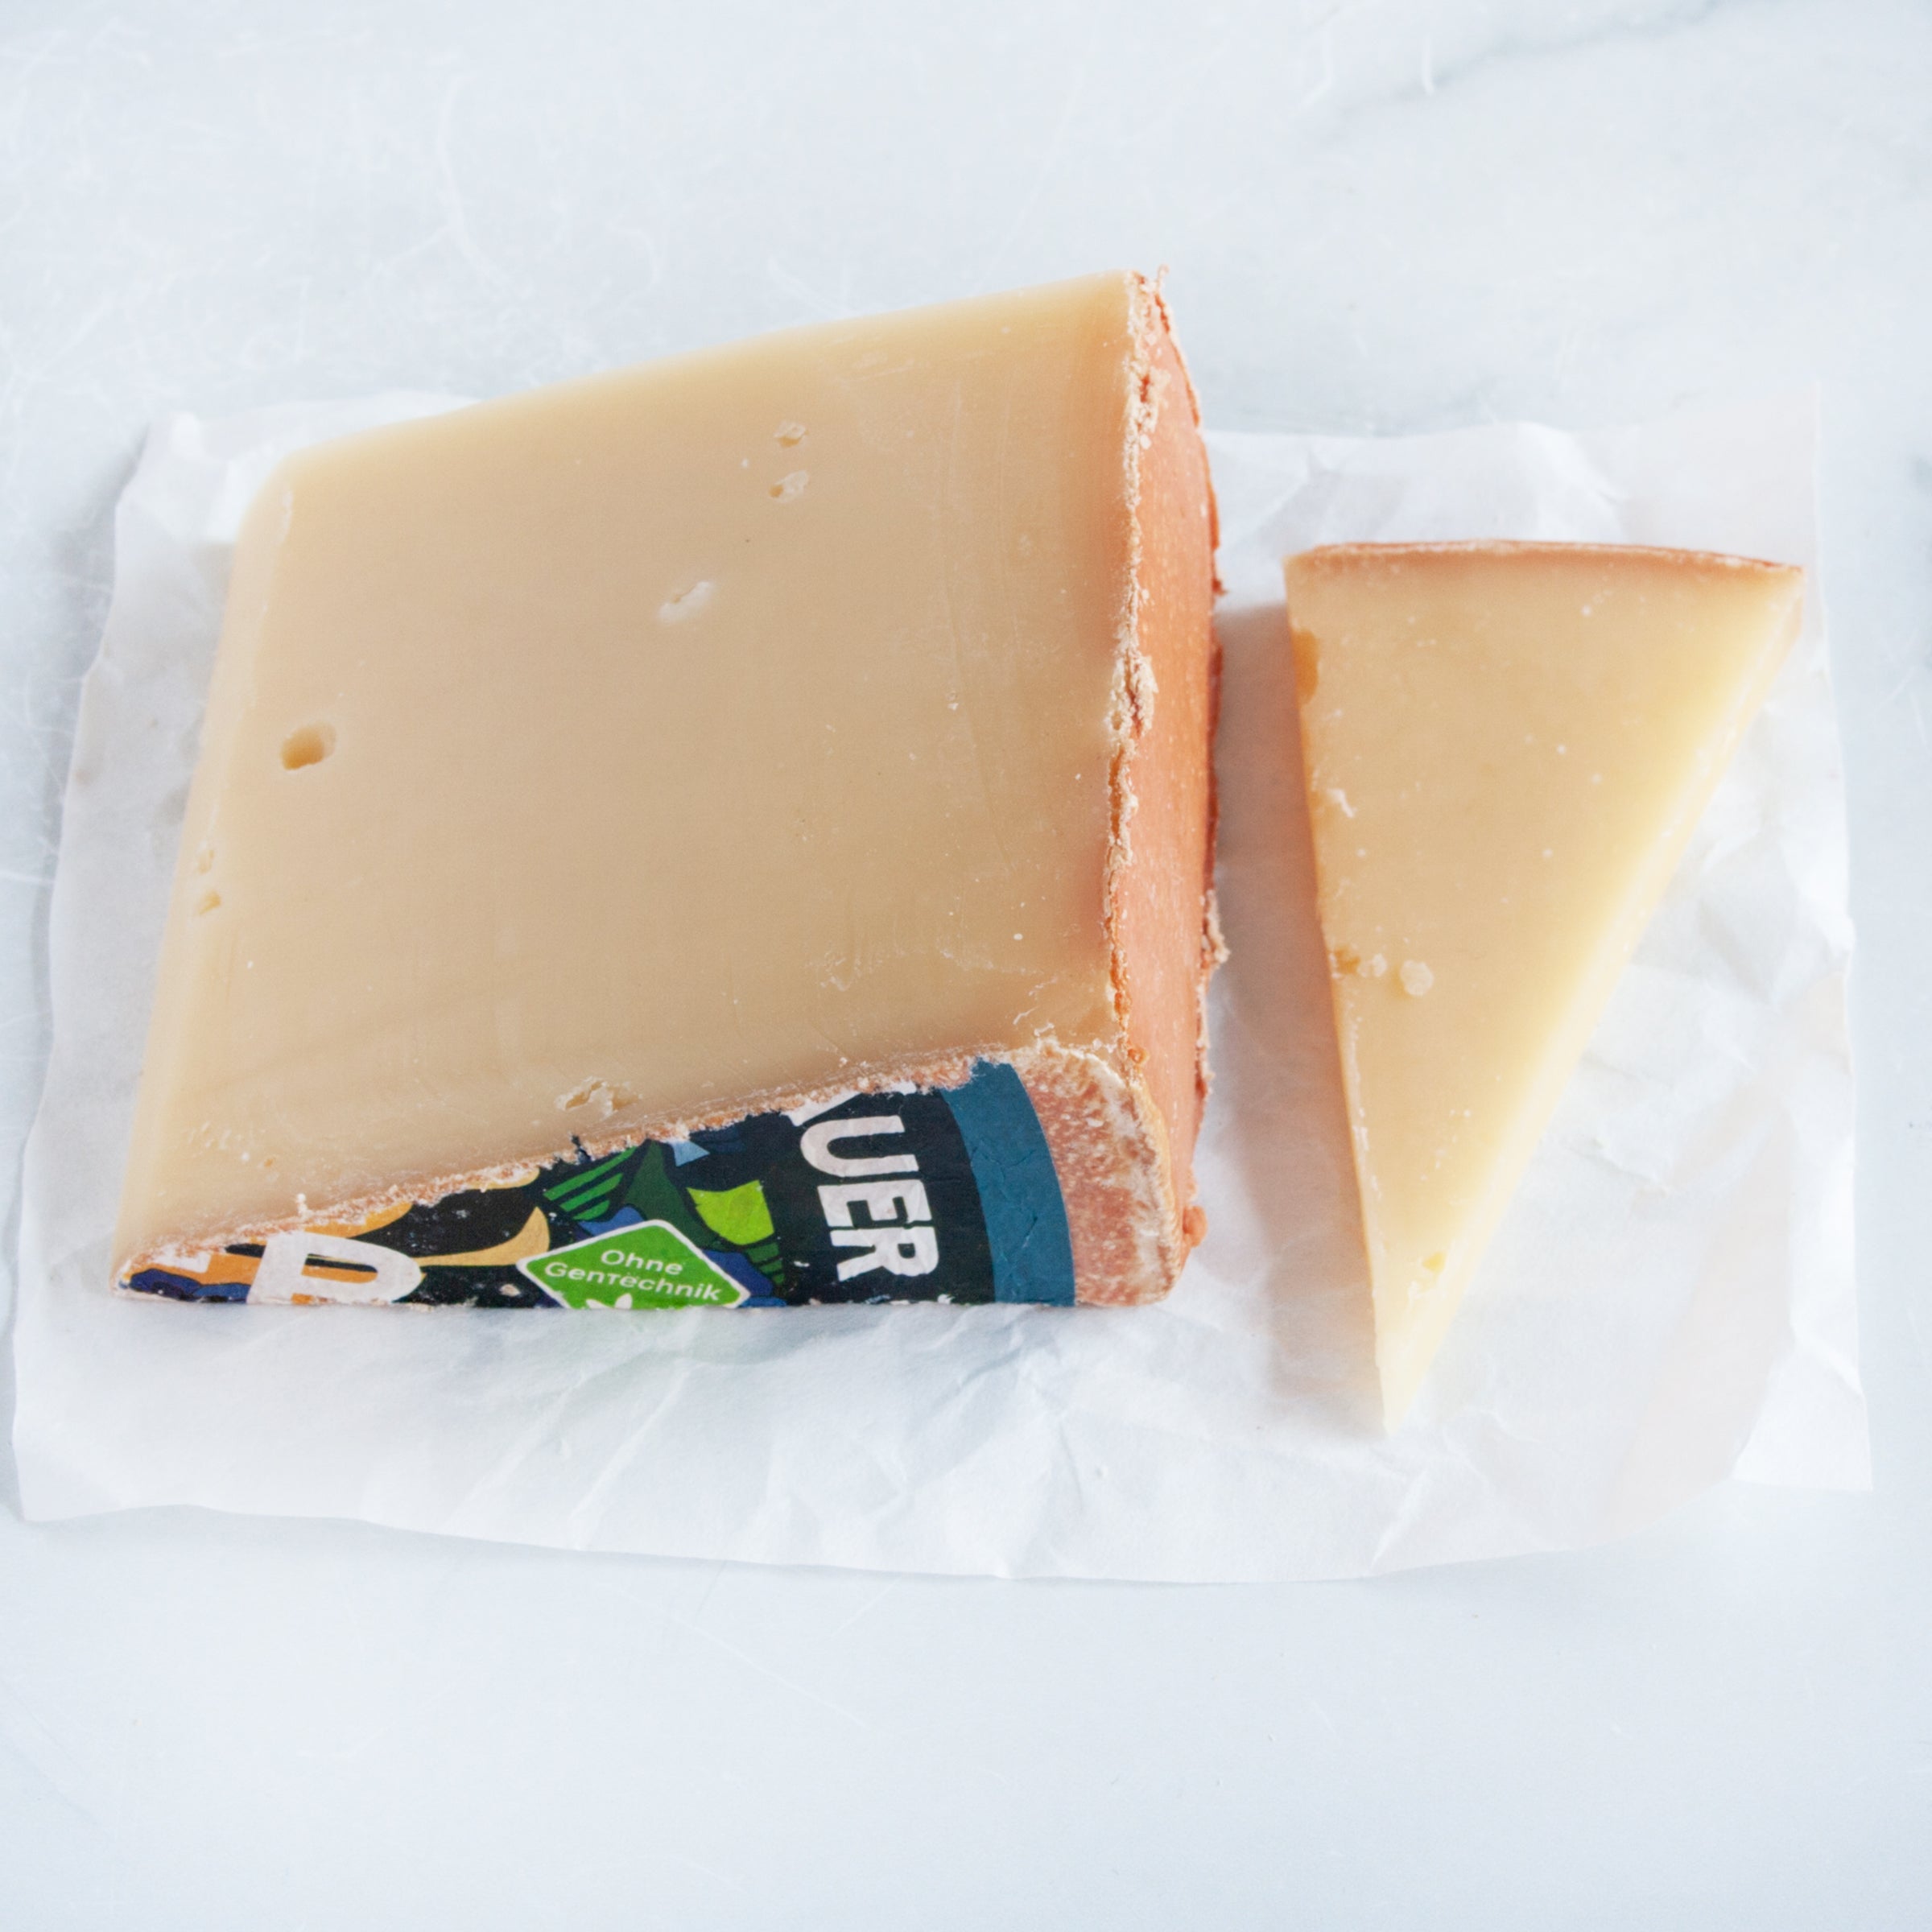 Baldauf Der Allgauer Cheese_Cut & Wrapped by igourmet_Cheese